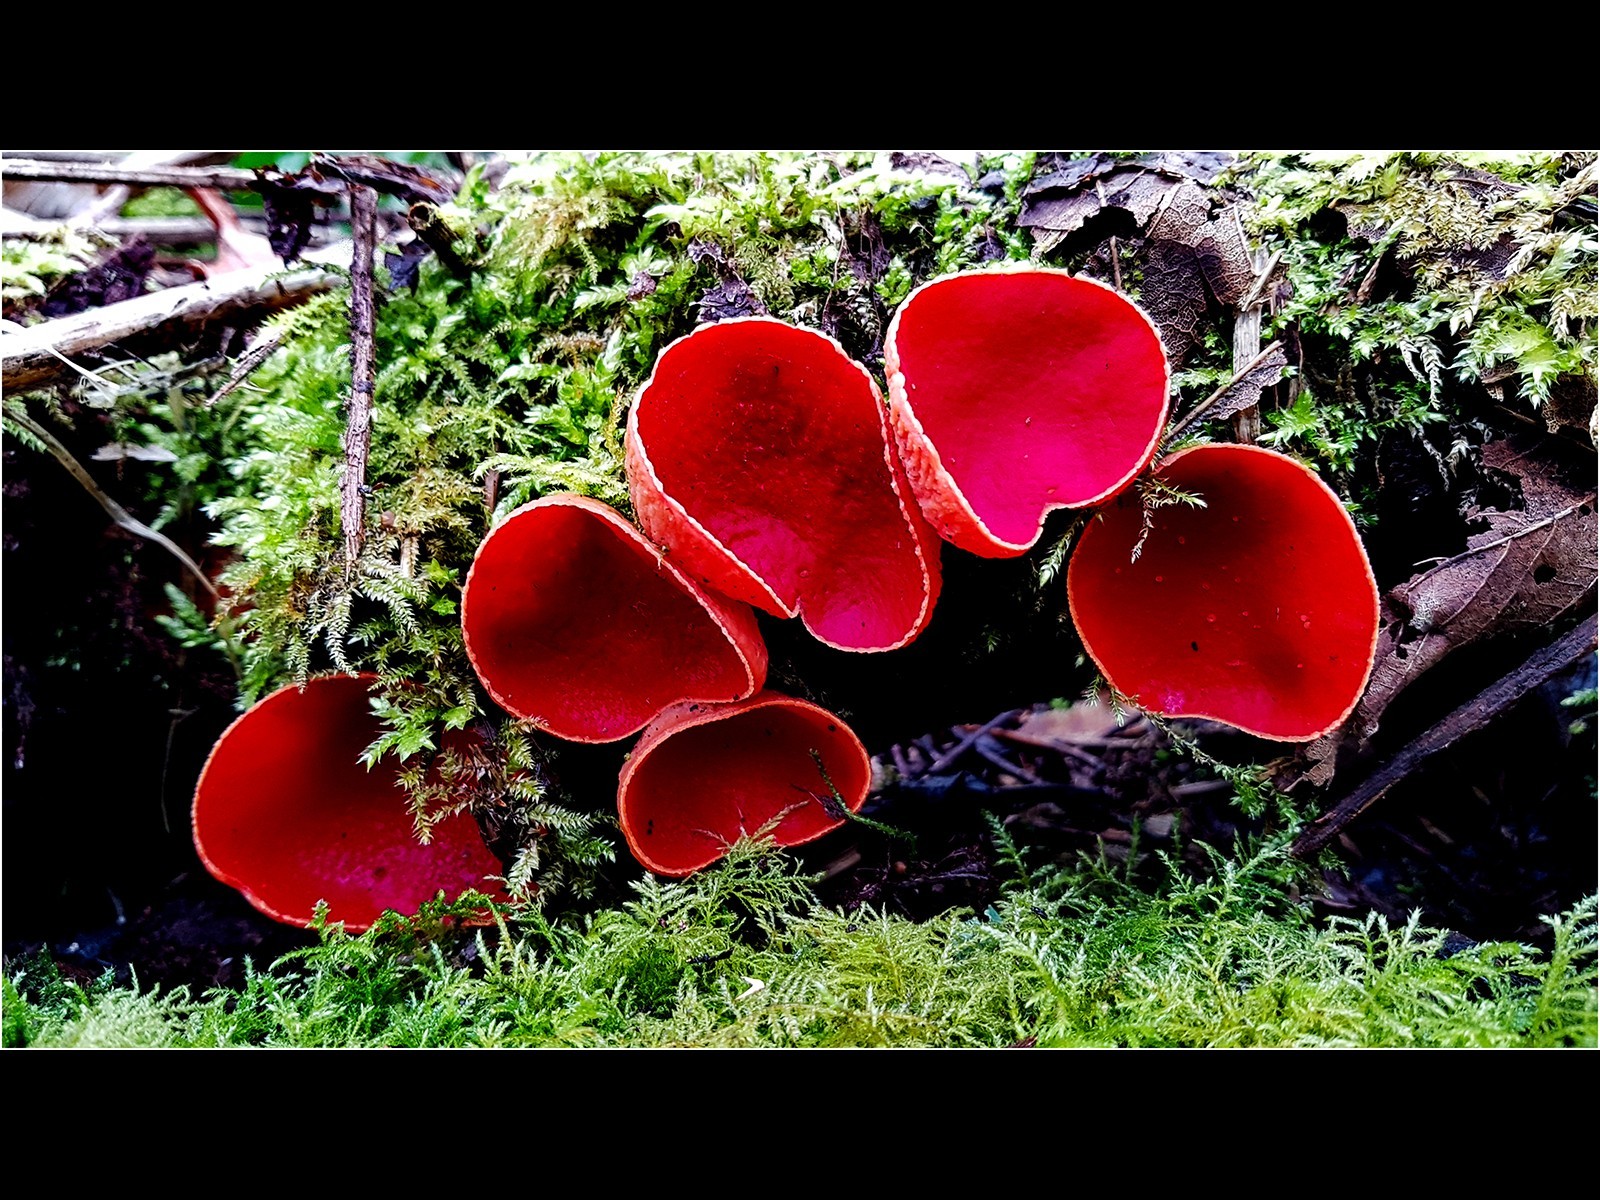 Safron Elf Cup Fungi